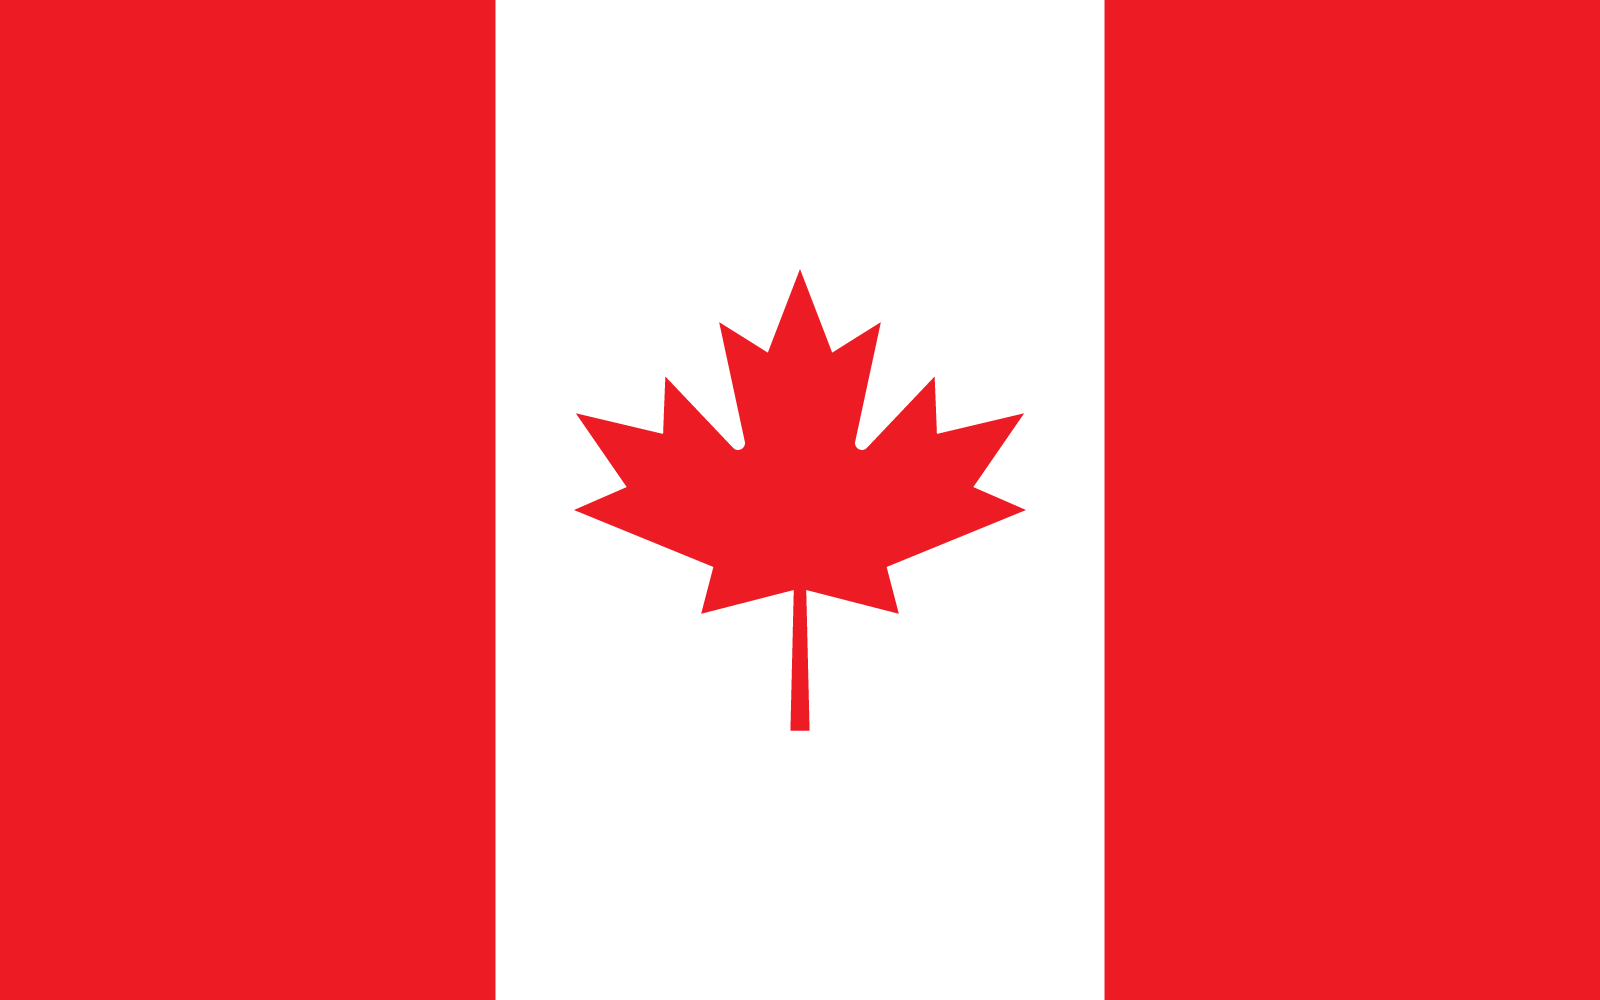 Vettore di progettazione piana della bandiera del Canada